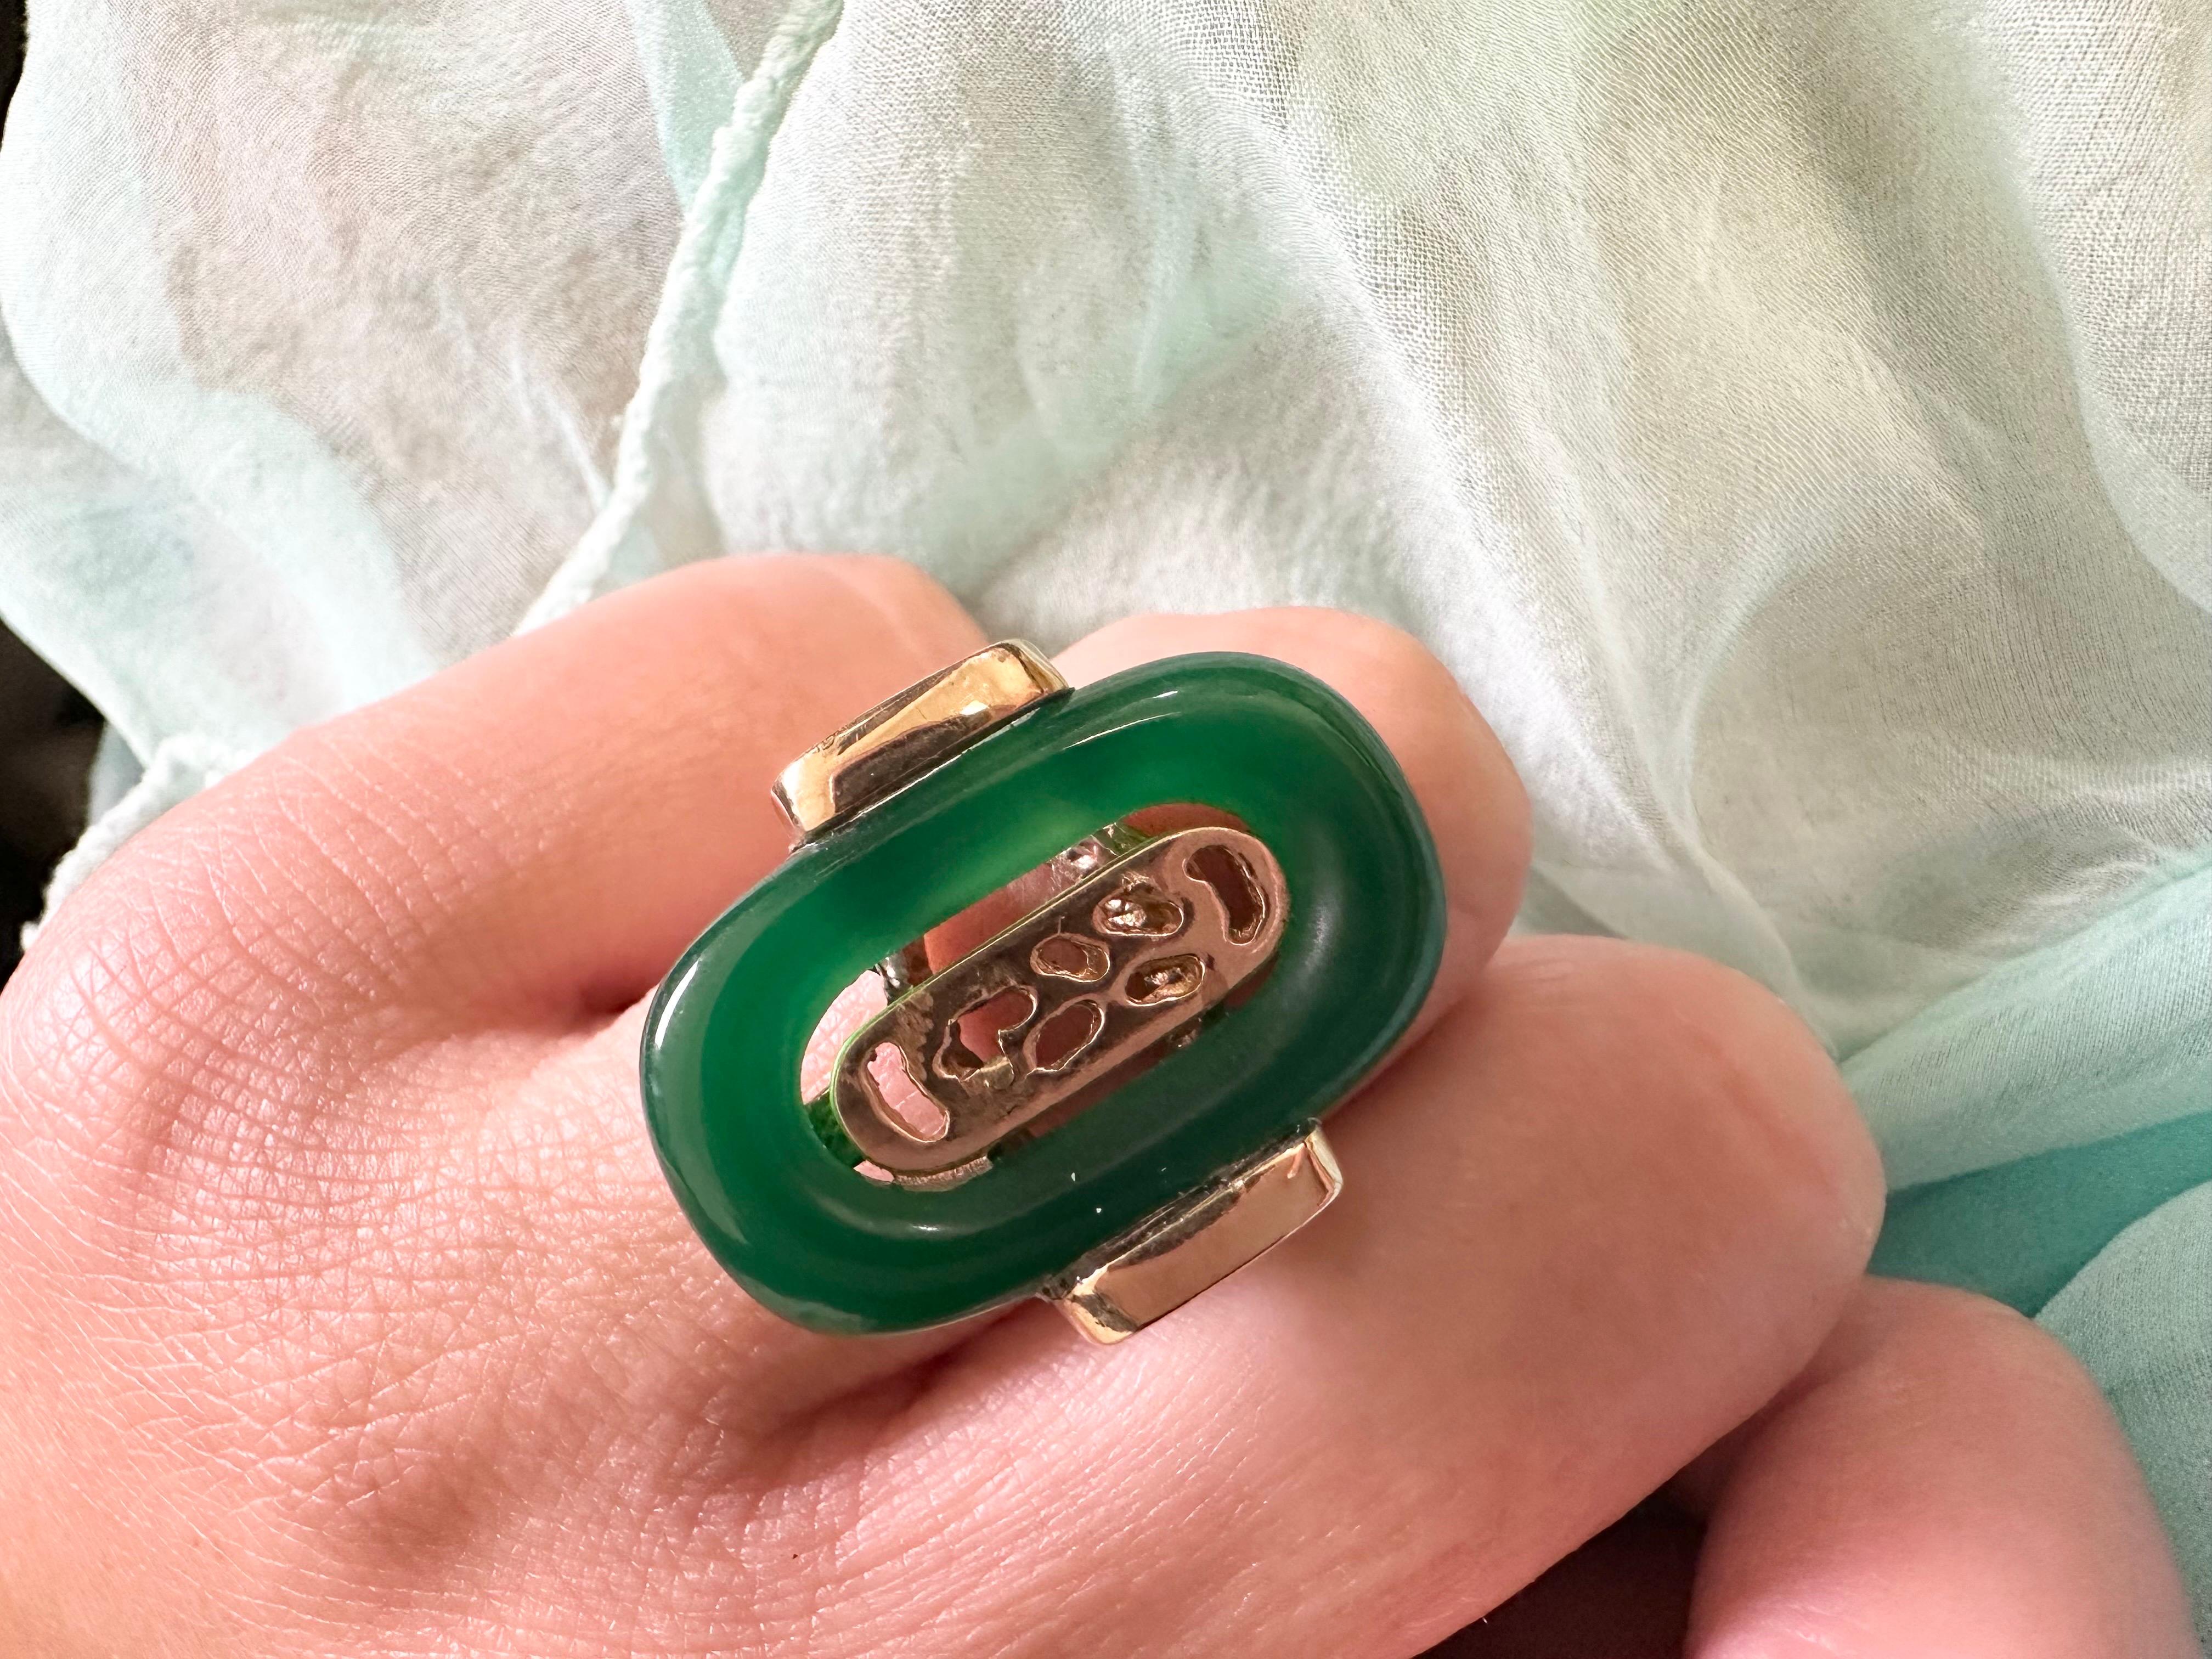 Atemberaubende grünen Onyx Ring in 14KT Gelbgold, der Künstler, der diesen Ring machte das Zentrum leicht zur Seite geneigt, so dass diese eine einzigartige moderne Darstellung.

Metall Typ: 14KT massivem Gelbgold
Gramm Gewicht:8.60 Gramm